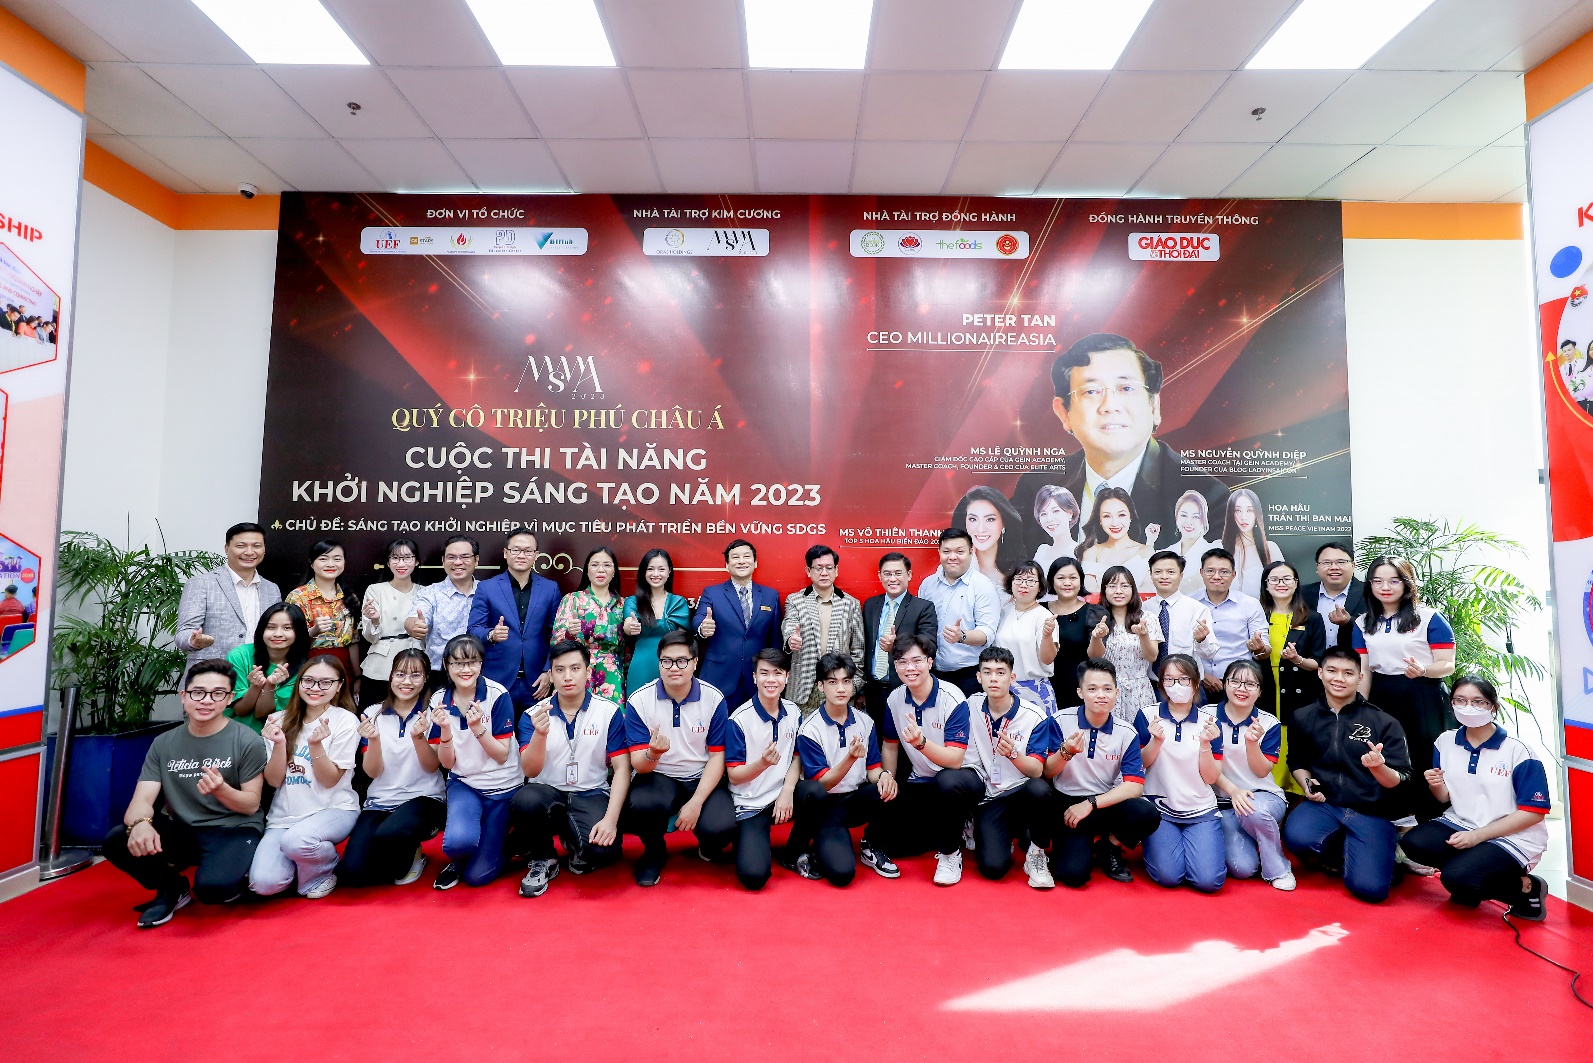 Tỷ phú Singapore truyền cảm hứng cho sinh viên về tinh thần khởi nghiệp - Ảnh 1.